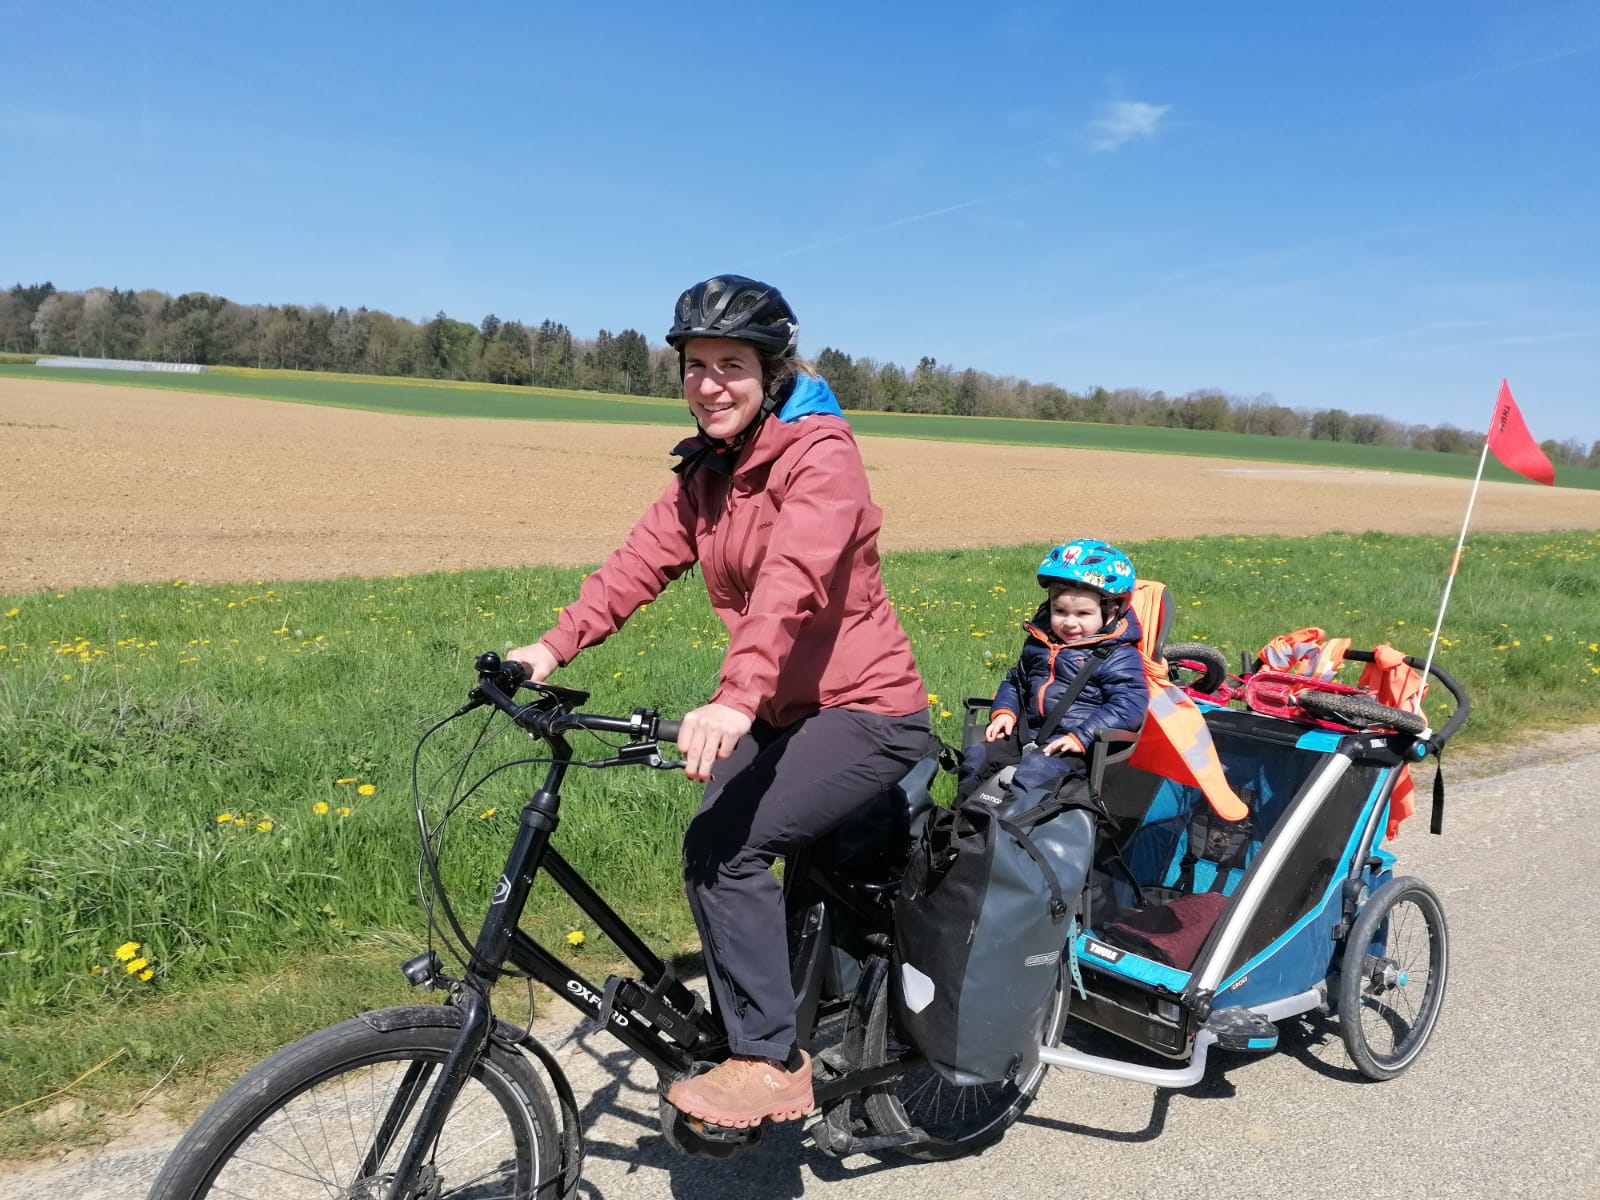 Les solutions de tractage de vélo enfant – Pro Velo